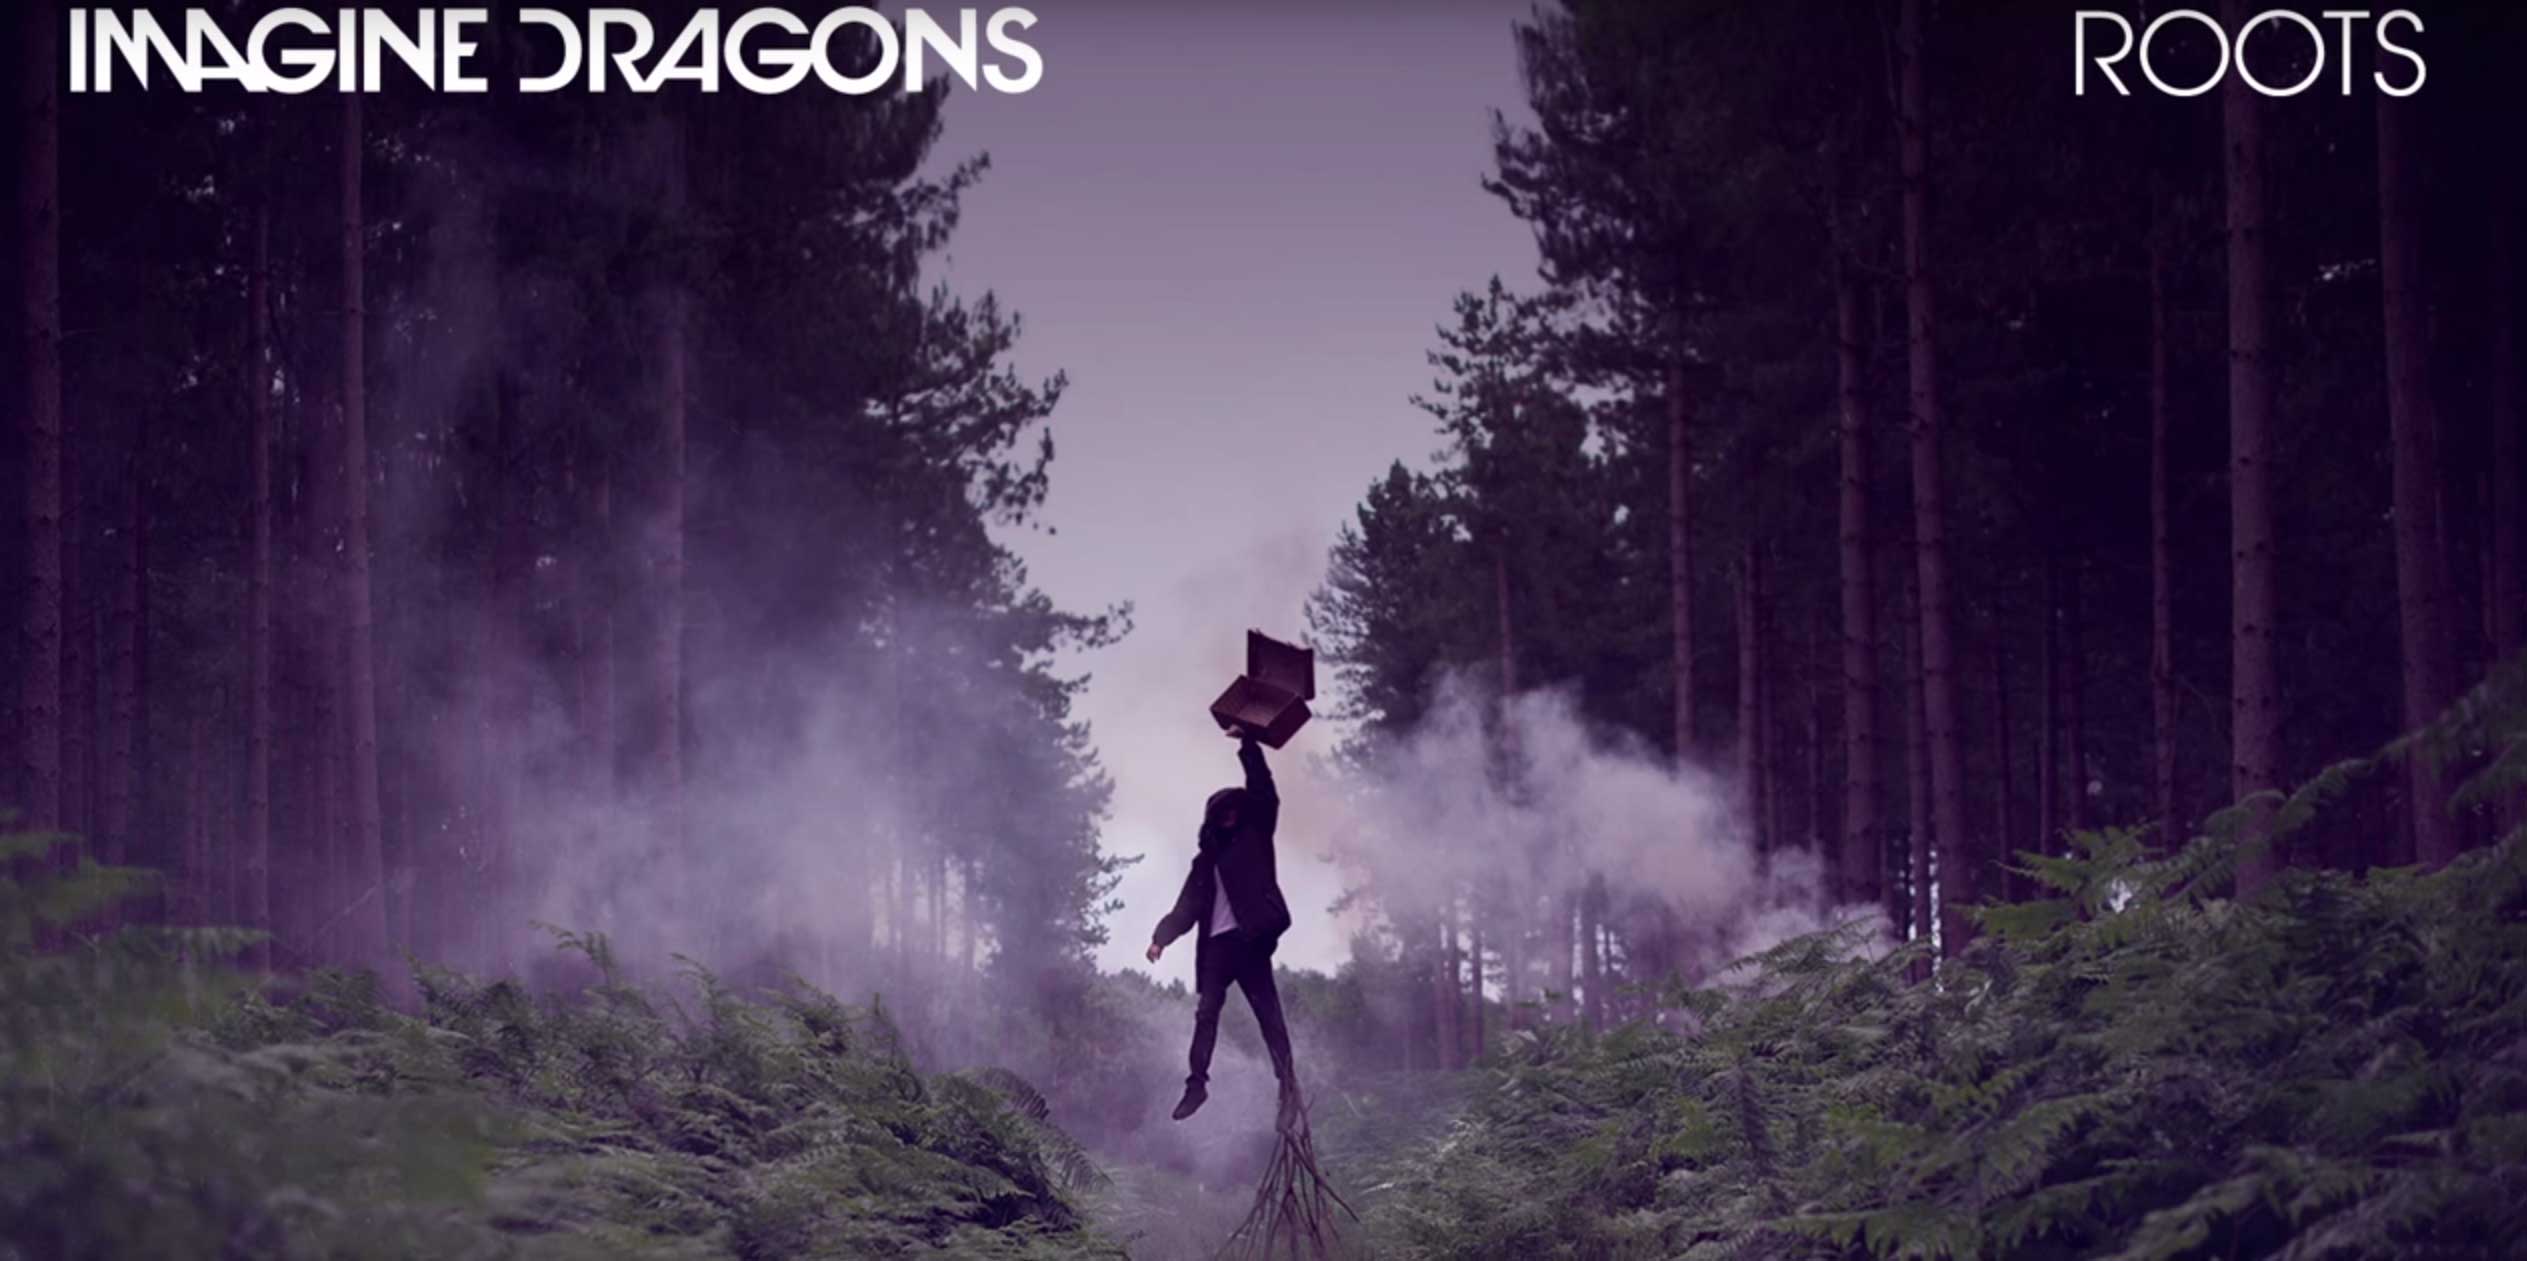 Imagine Dragons publica nueva canción: ‘Roots’